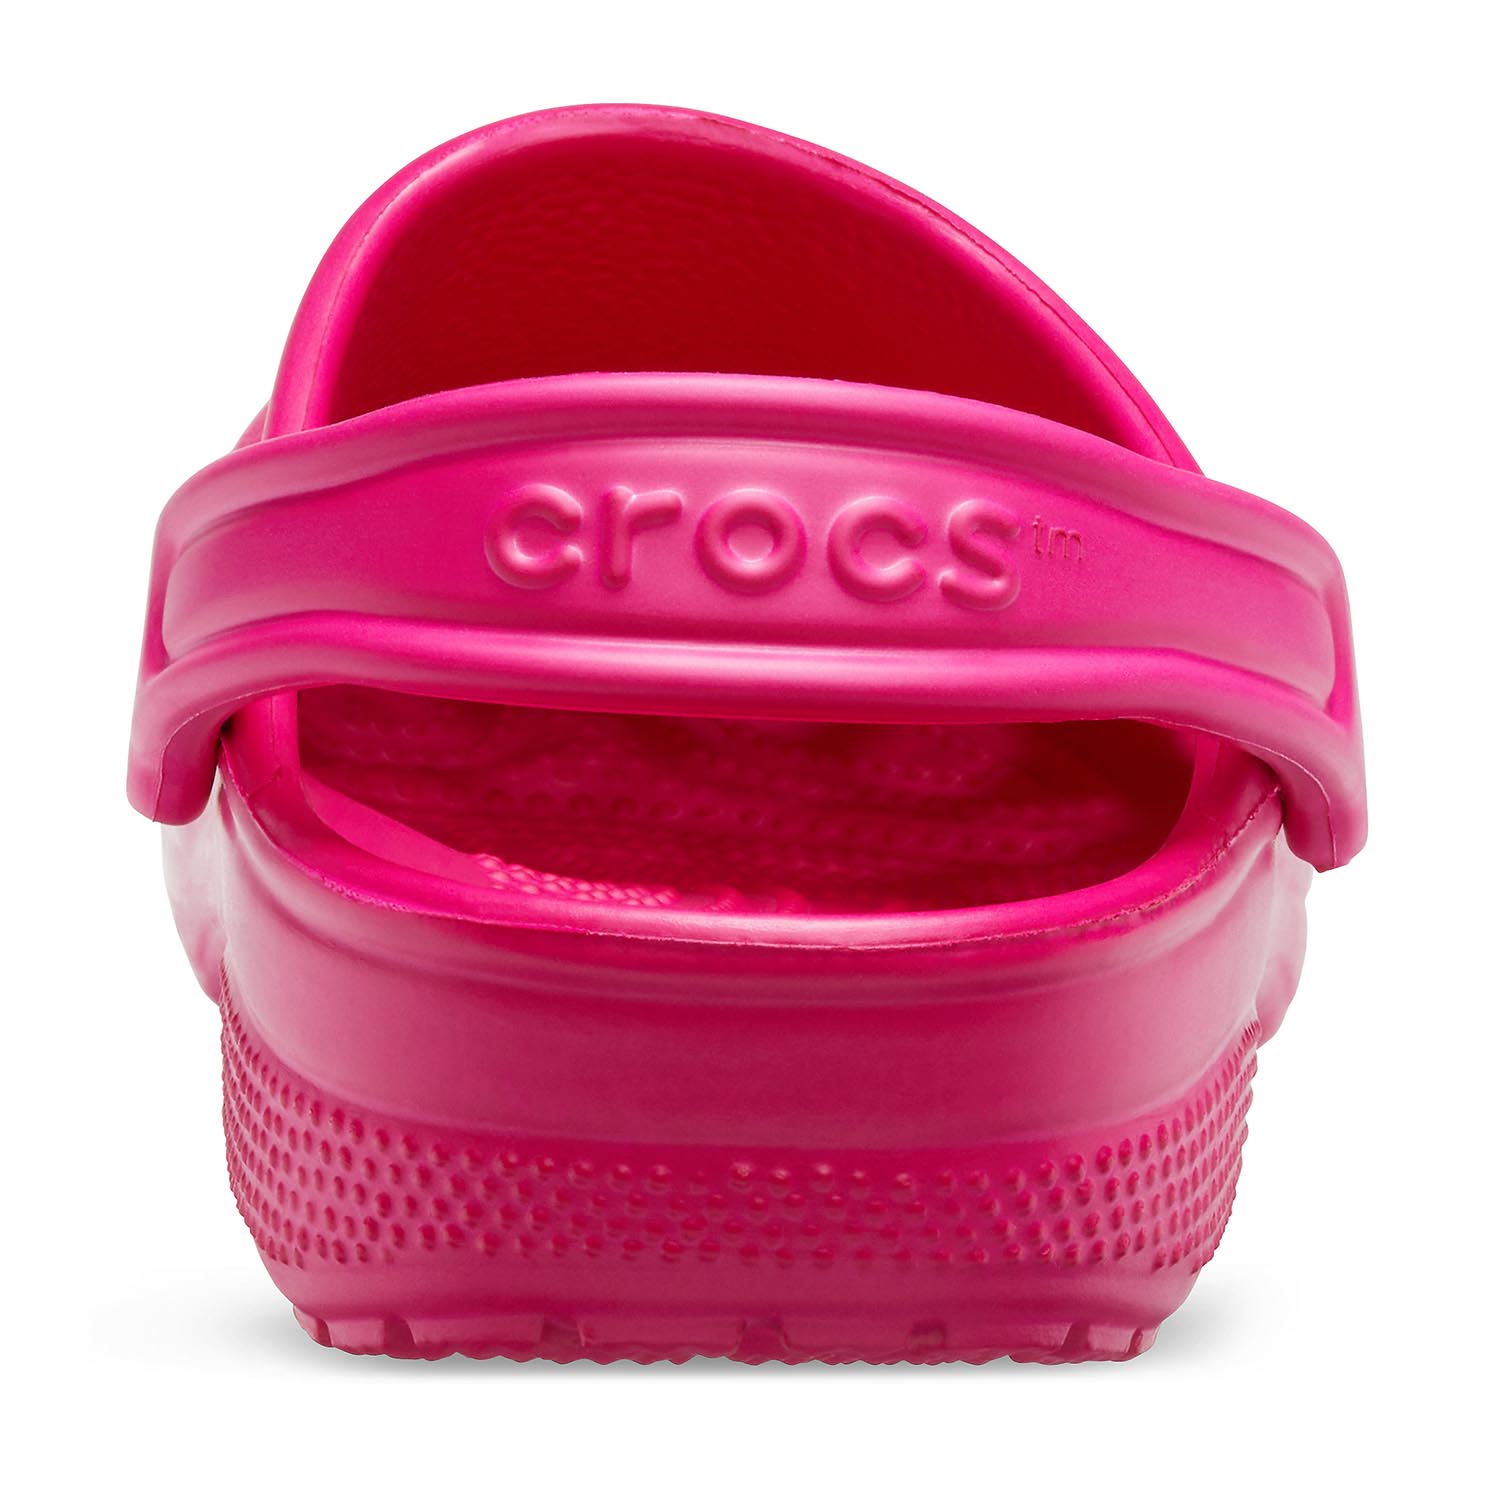 Crocs Classic Clog K Kinder Clog Relaxed Fit 204536-6QQ Pink